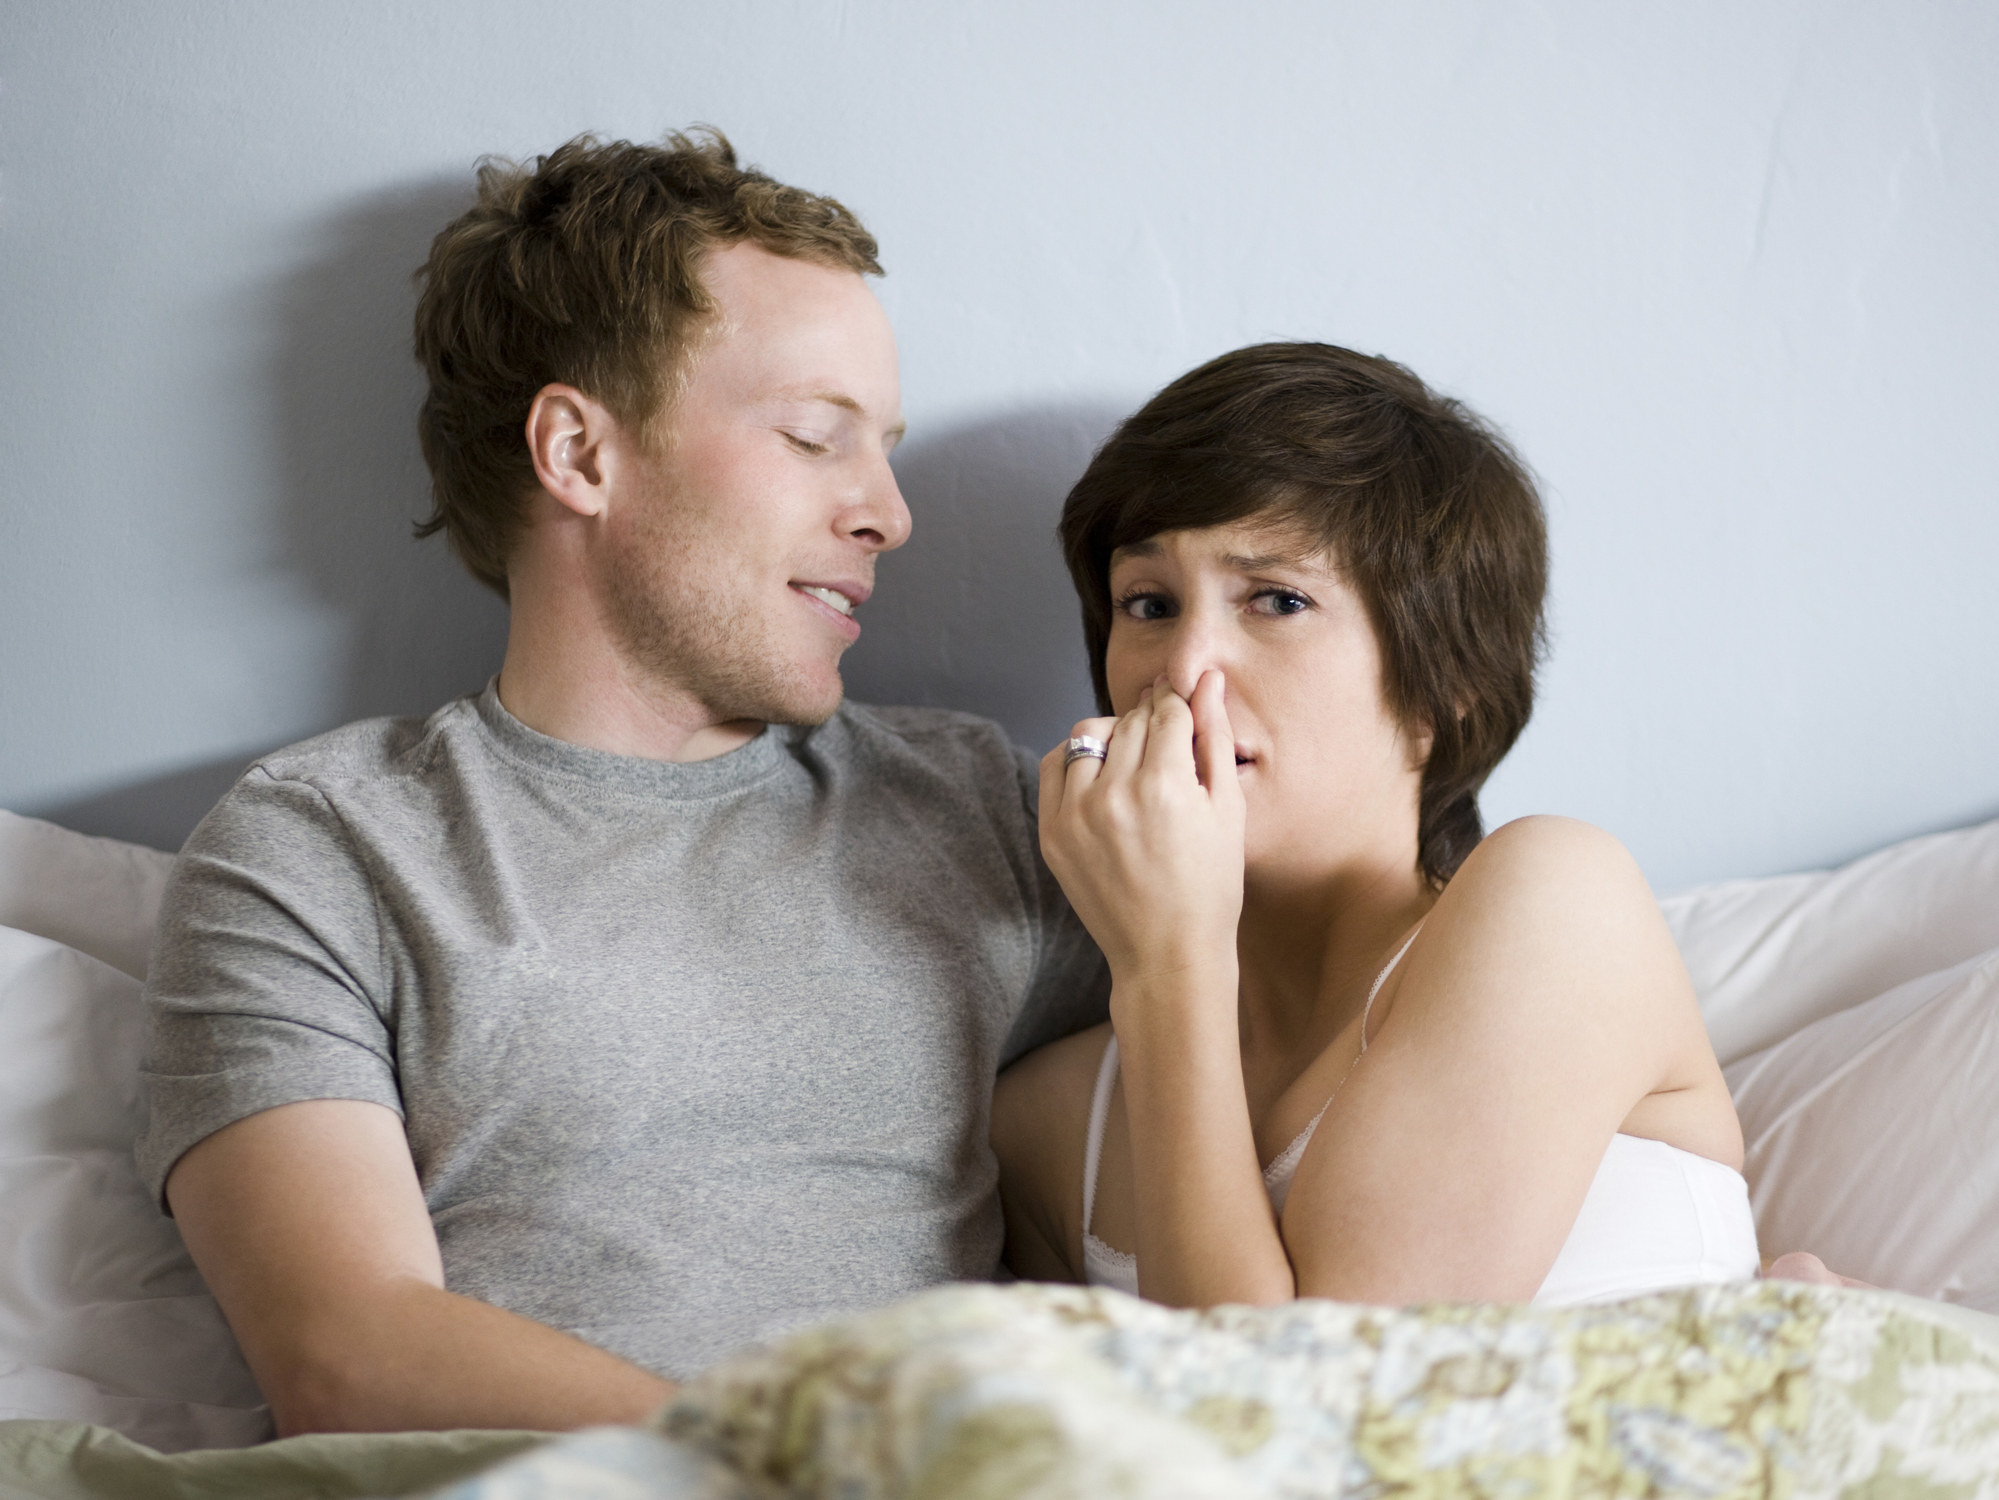 Una pareja en la cama y la mujer hace una señal con el rostro de que siente un mal olor.